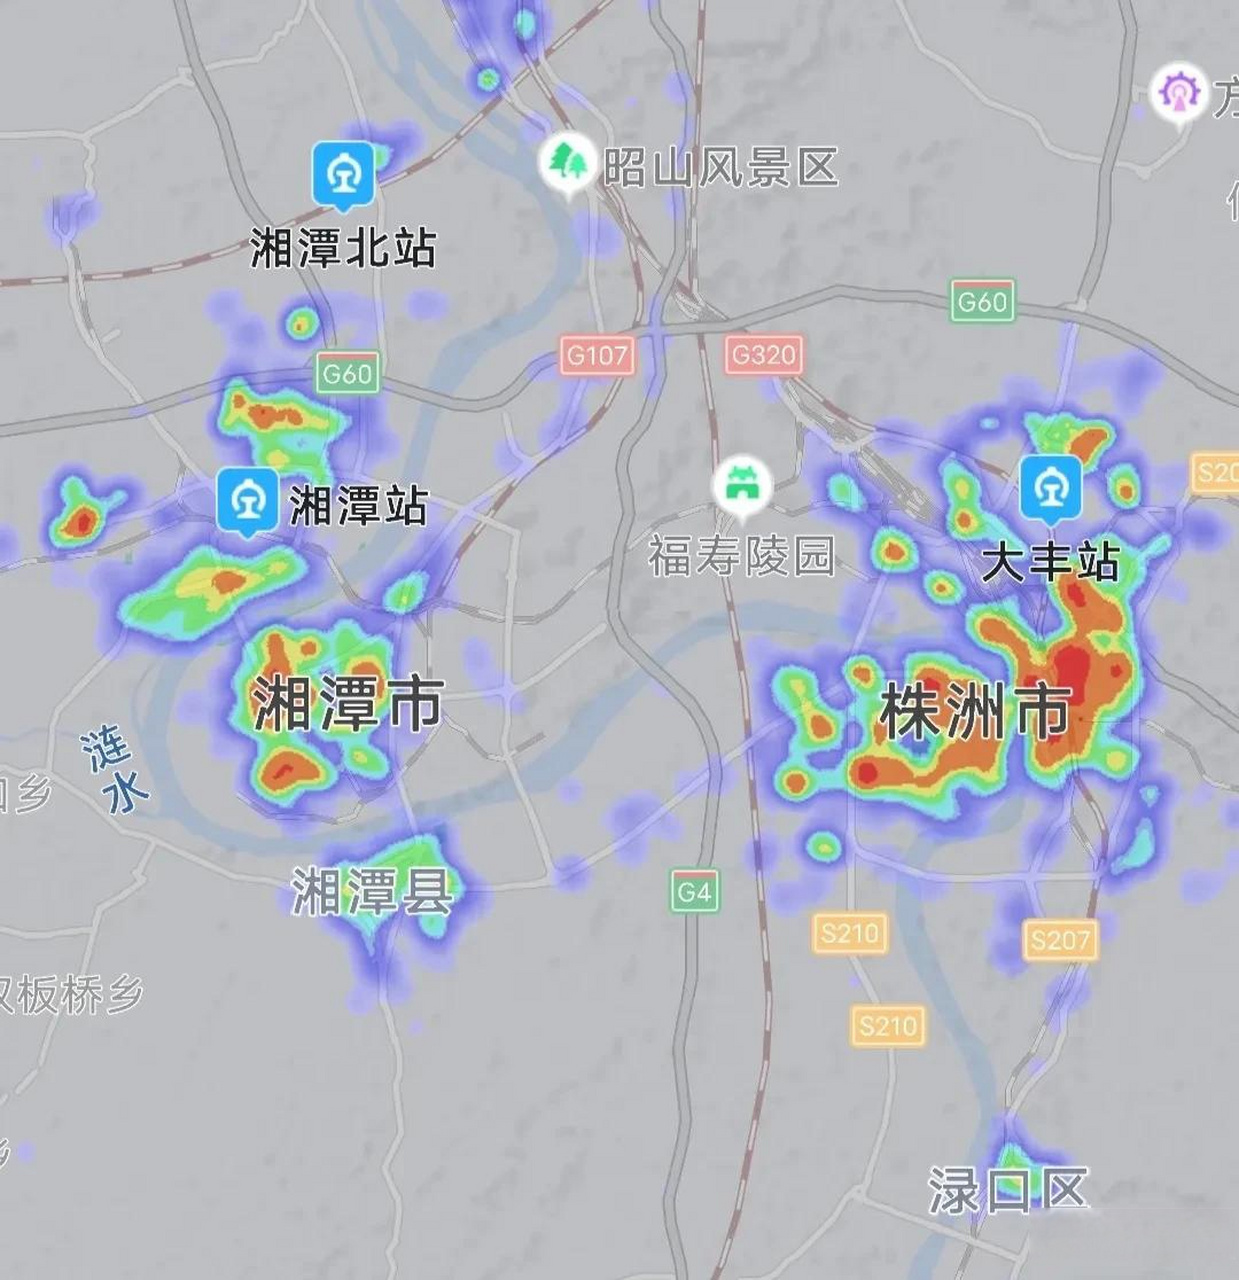 株洲湘潭热力图对比,晚上22:55分相同比例尺下我们看看两座城市有何不